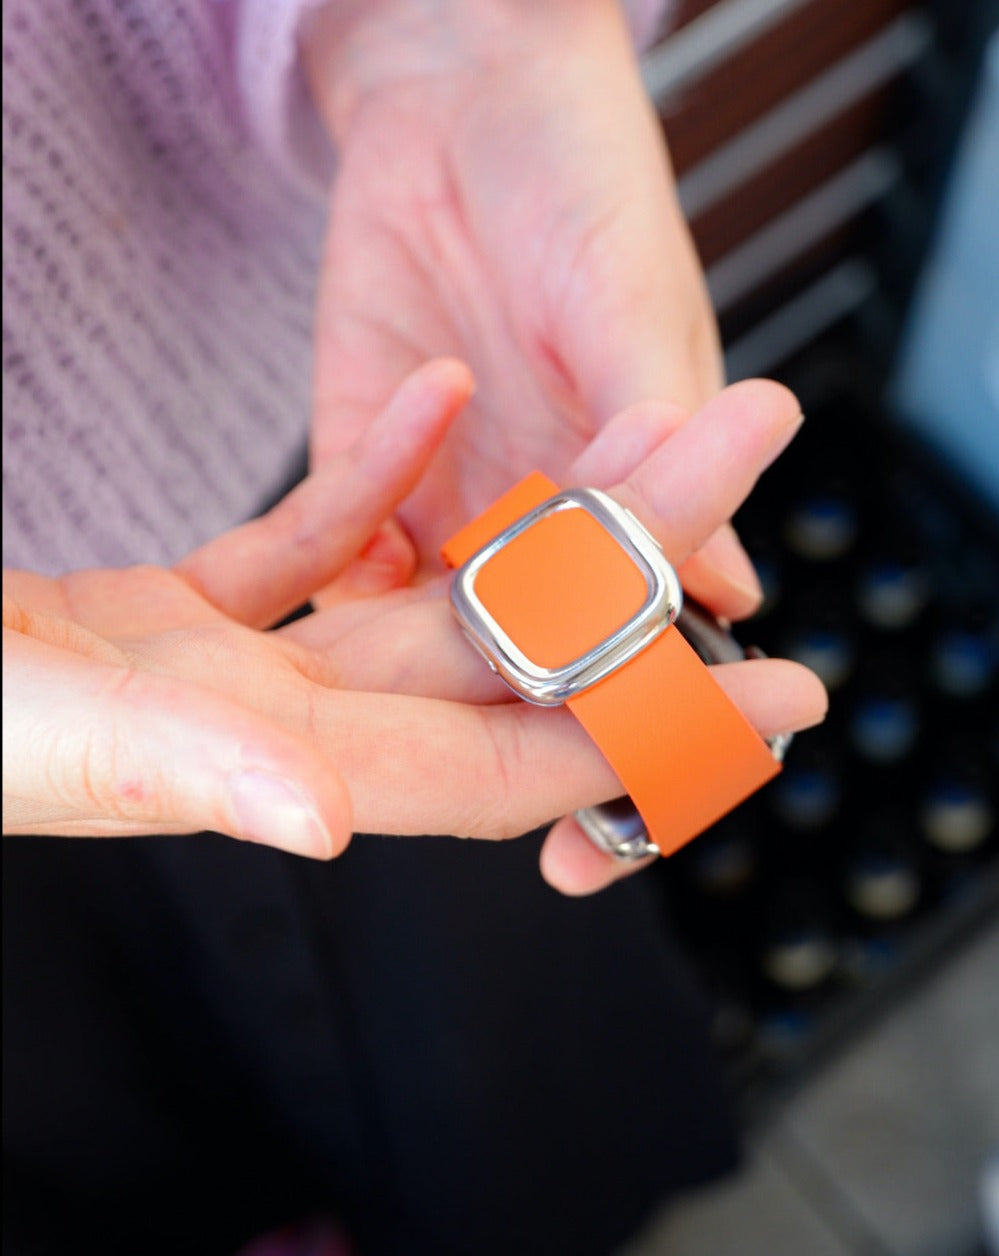 Magnetic Buckle, Modern Buckle Sunset | Modernes Lederarmband für Apple Watch (Orange)-Apple Watch Armbänder kaufen #farbe_sunset